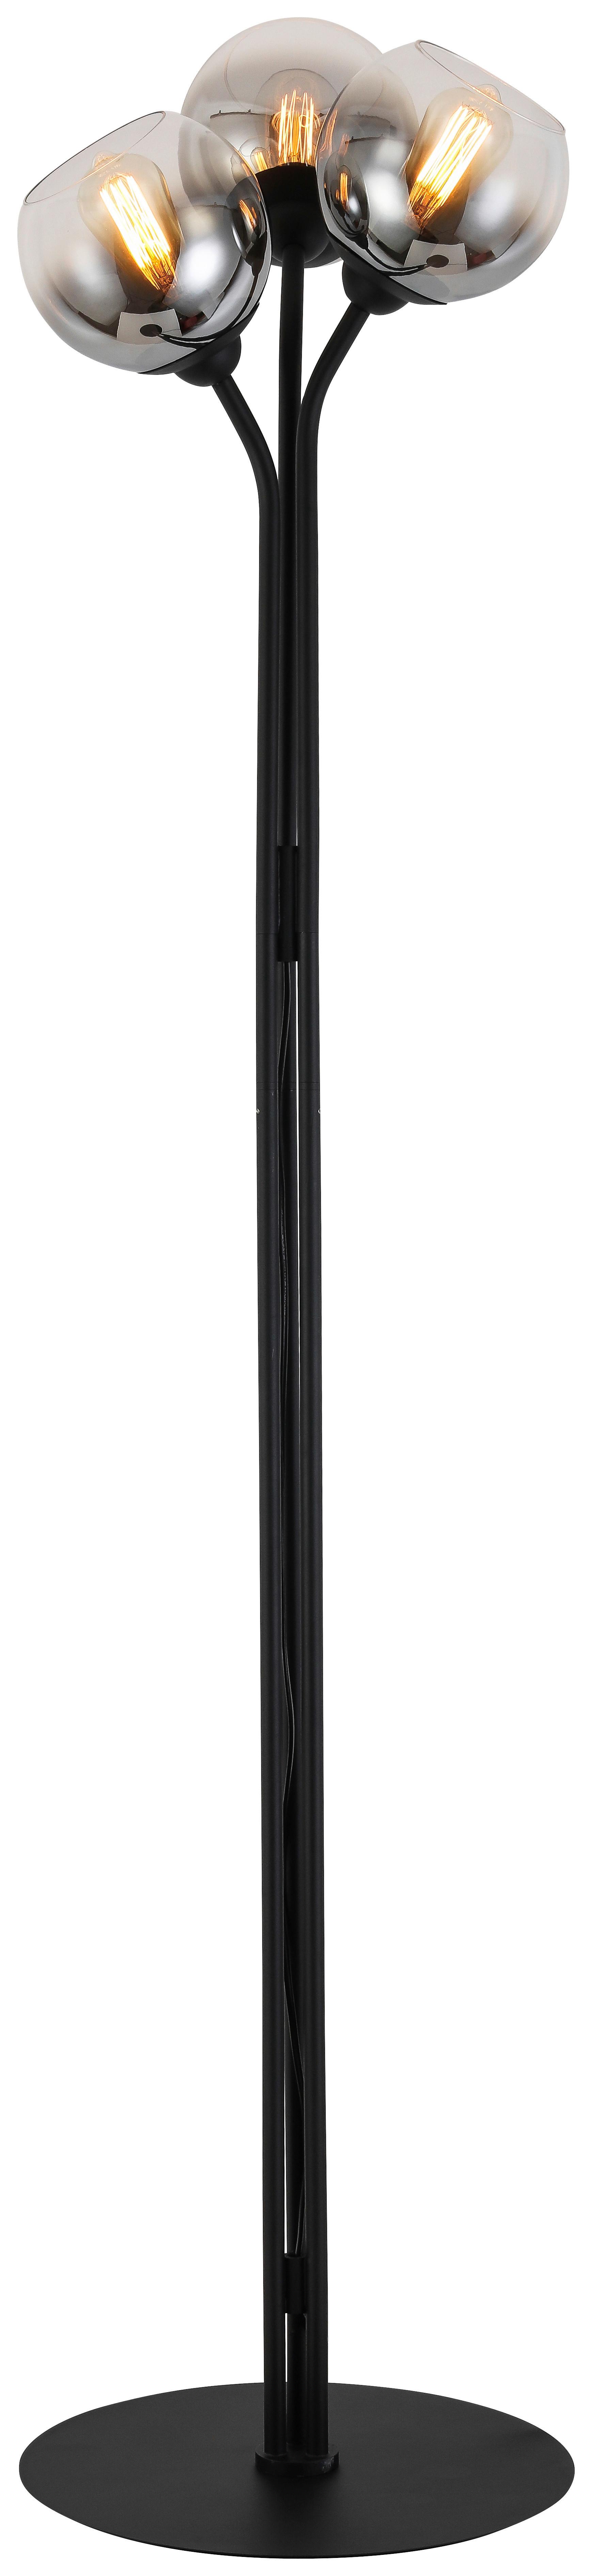 Stojacia Lampa Kian, Bez 3x E27 Max. 25w - čierna/chrómová, Moderný, kov/sklo (42/165cm) - Visiona